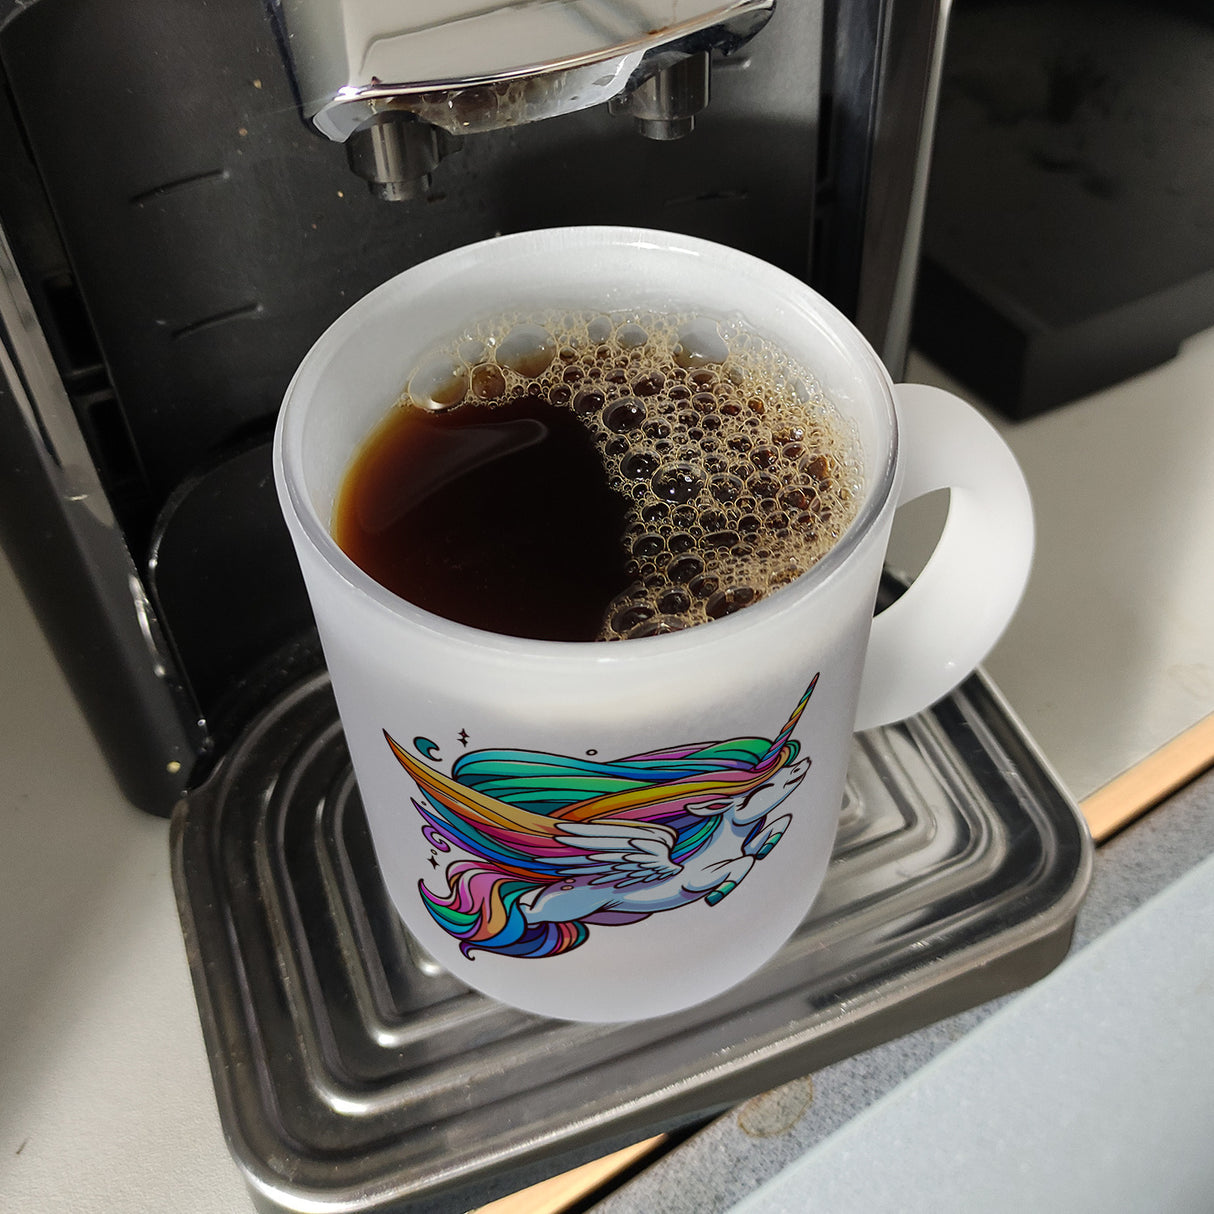 Einhorn Tasse Kaffeebecher